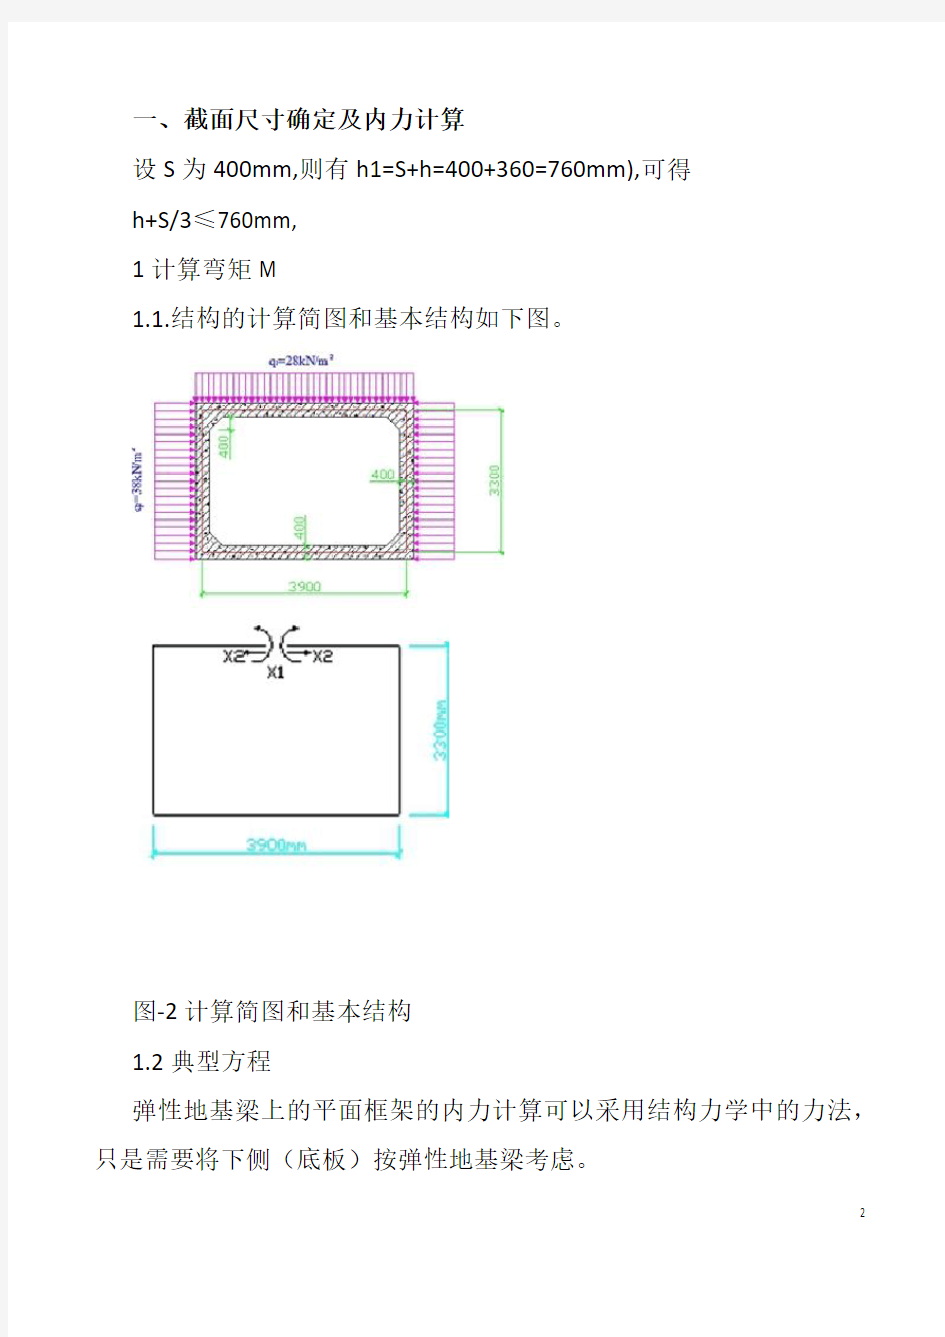 地下建筑结构_浅埋式矩形地下结构课程设计_计算书